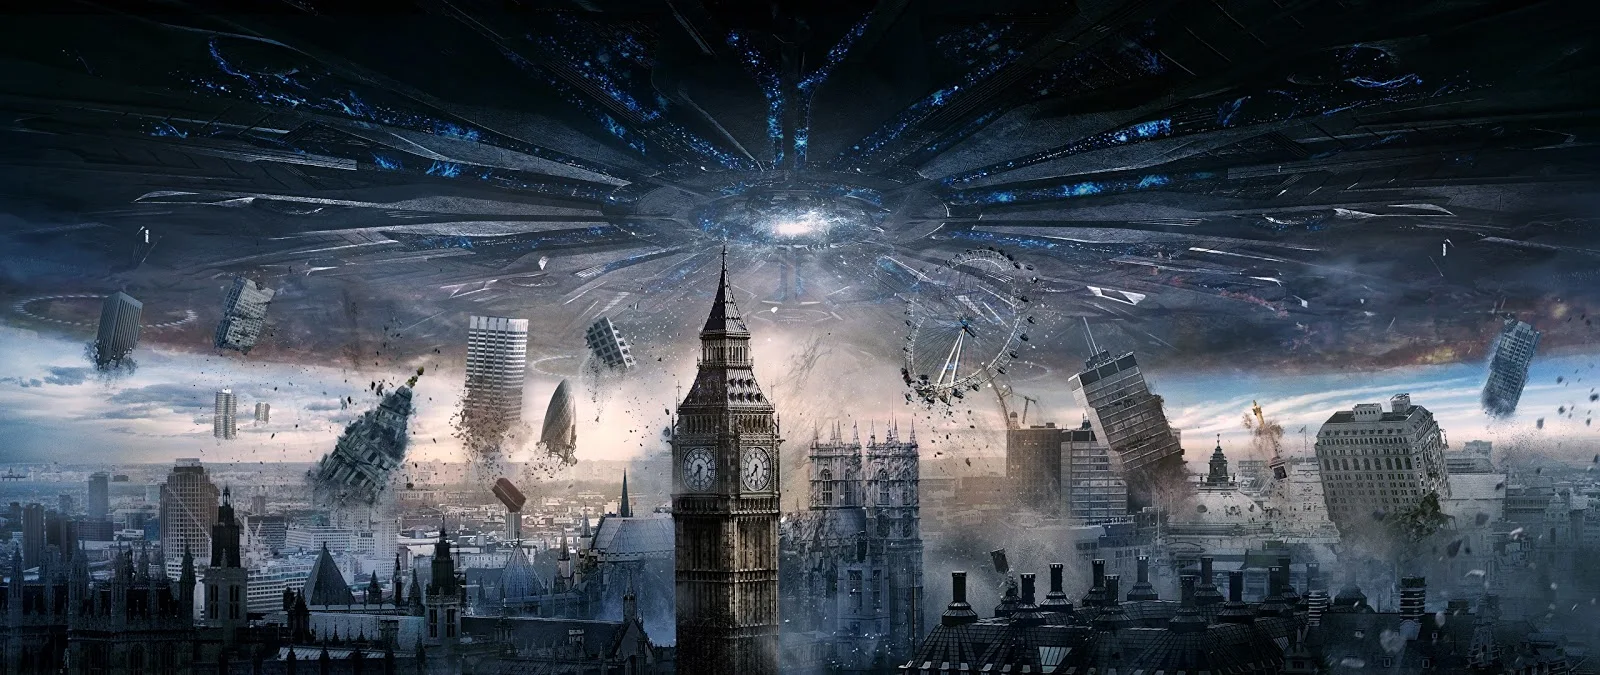 Cena do filme Independence Day mostrando invasão alienígena